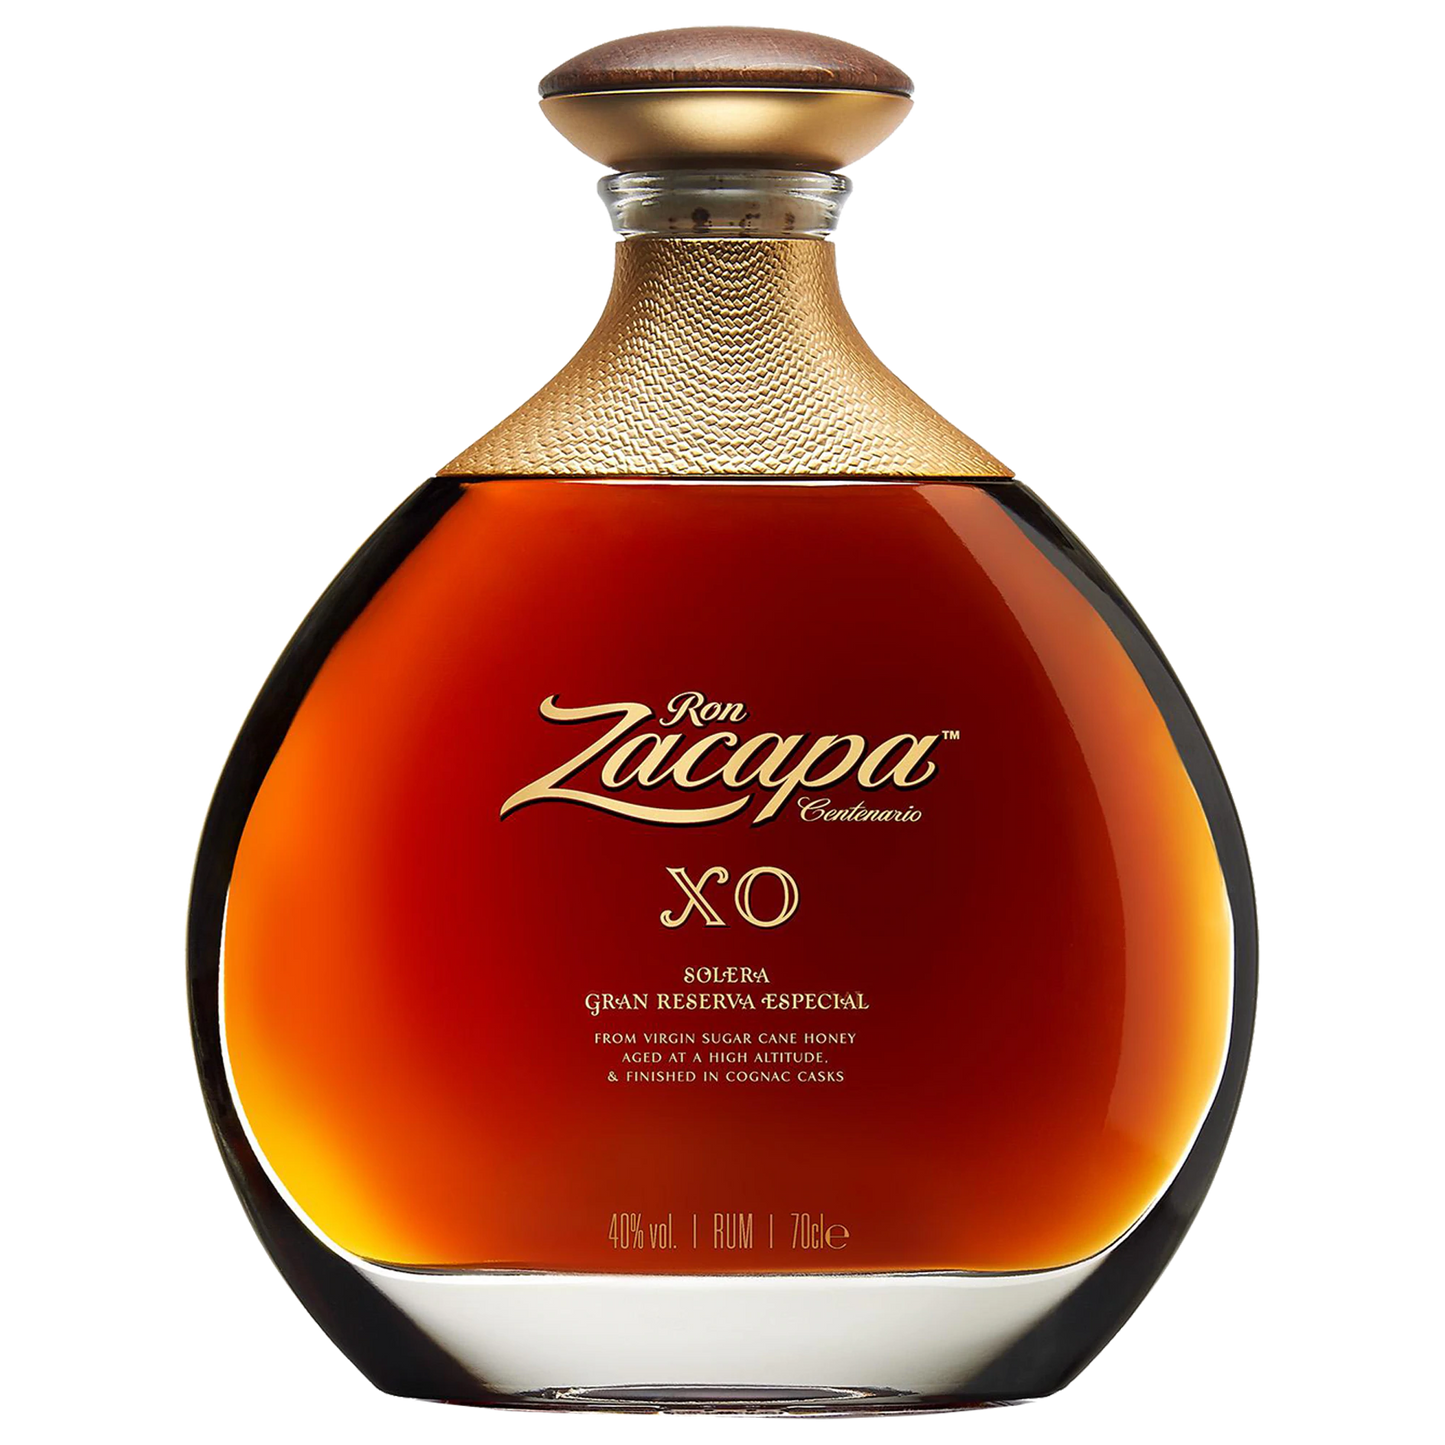 Ron Zacapa Centenario XO Solera Gran Reserva Especial Rum 700ml